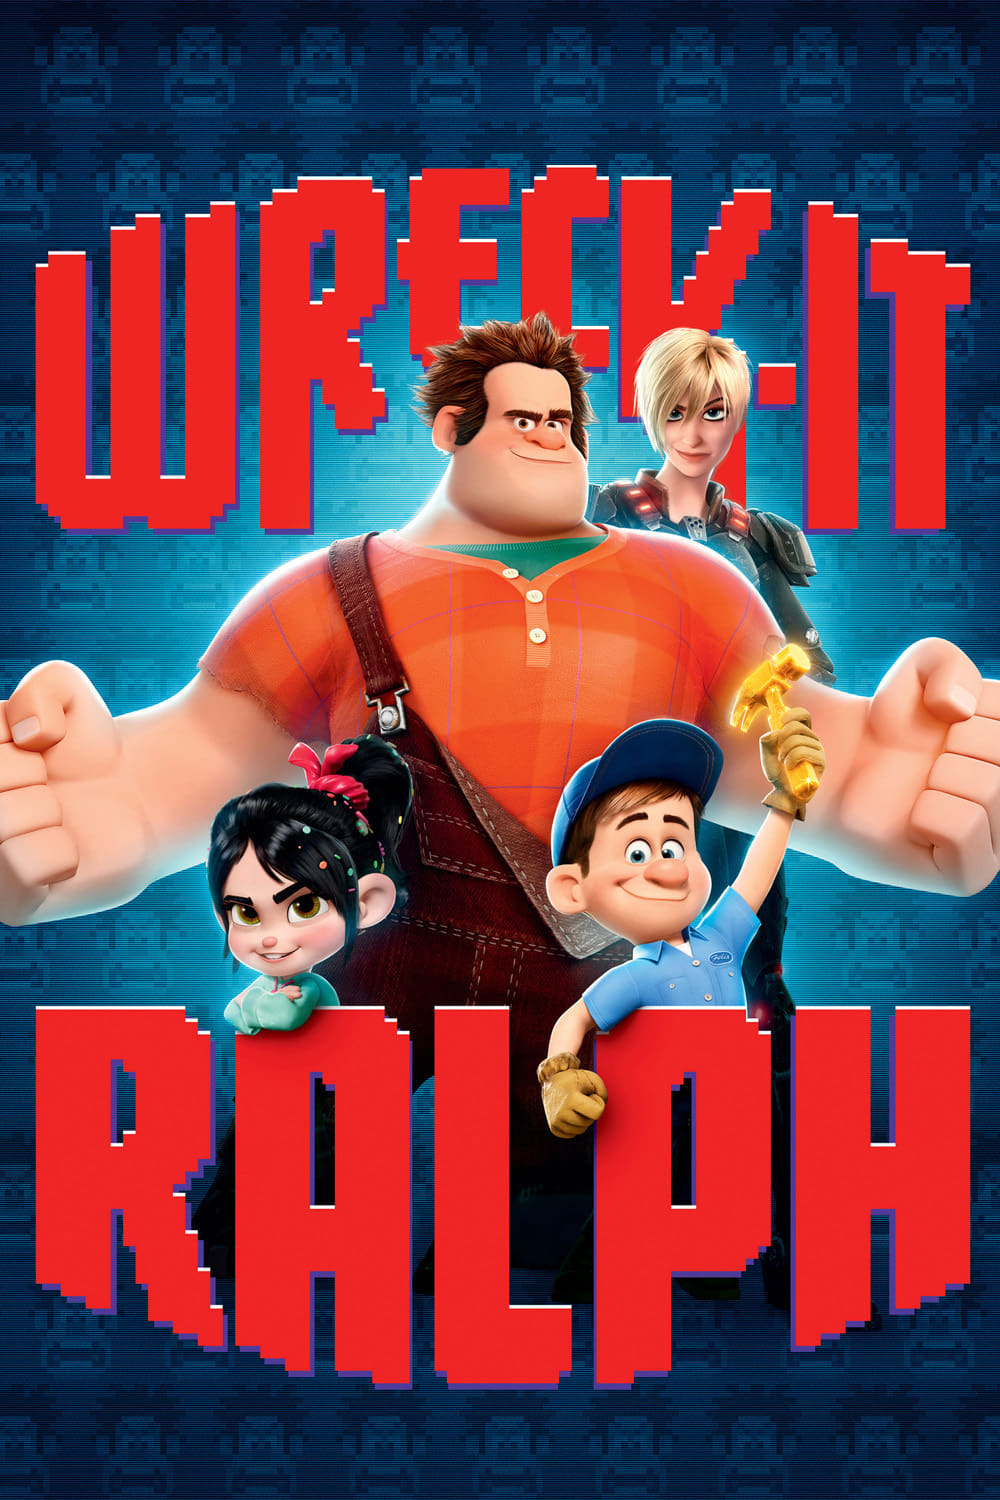 ¡Rompe Ralph!